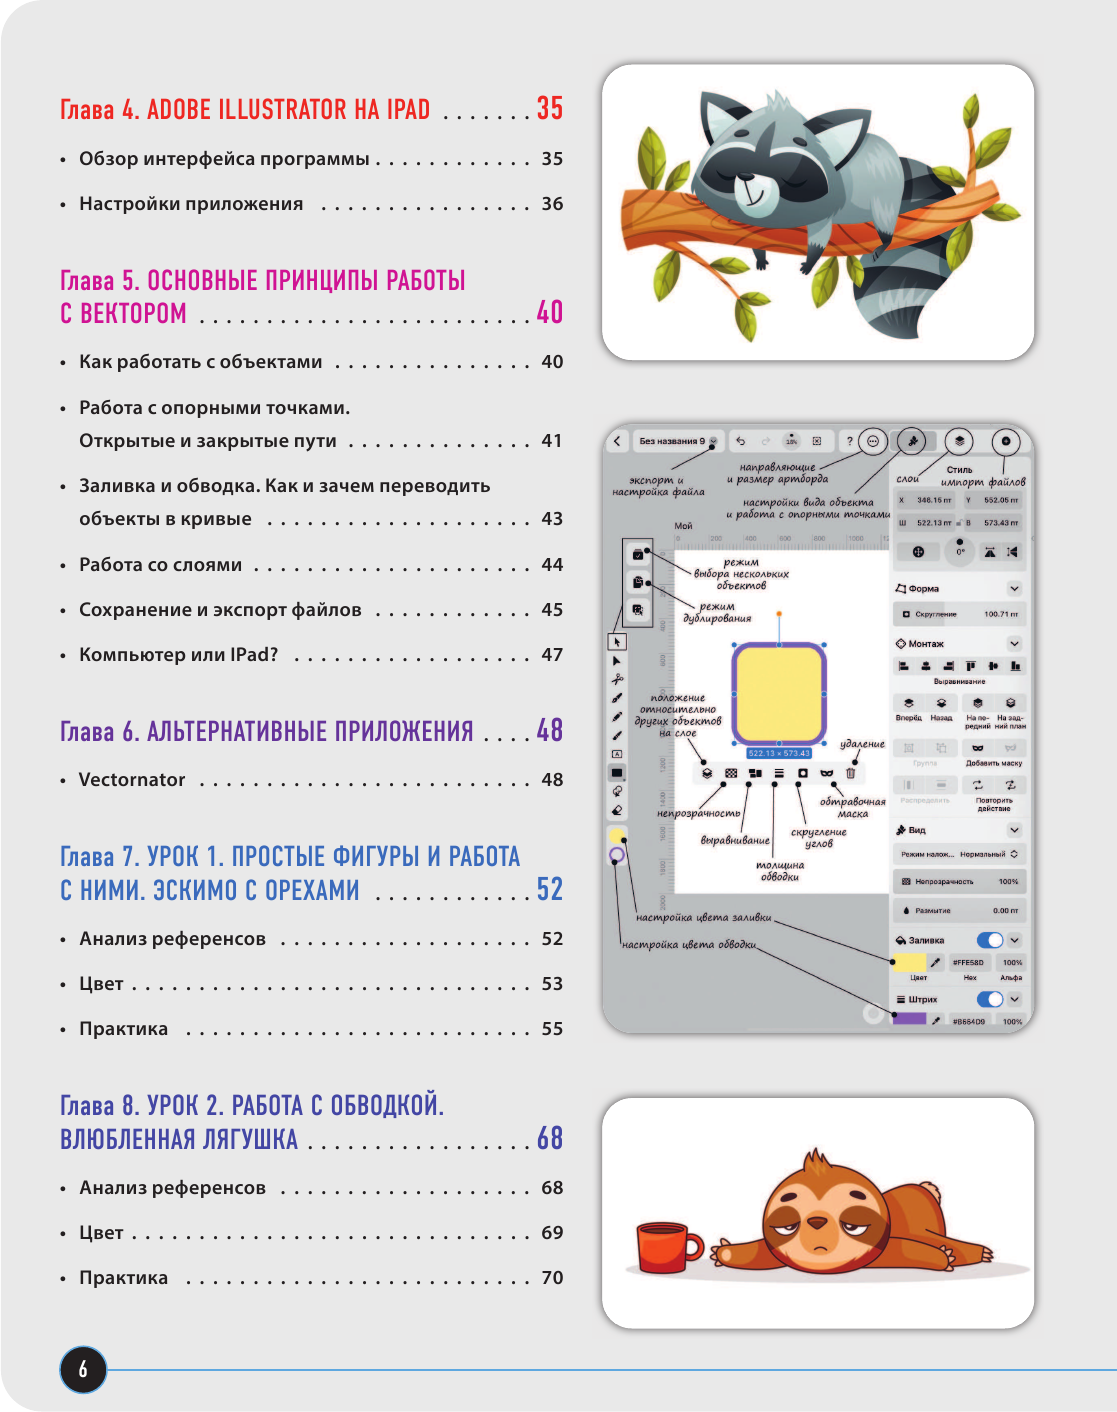 Векторная иллюстрация на iPad. Мастер-классы по рисованию в Adobe Illustrator и Vectornator для начинающих - фото №10